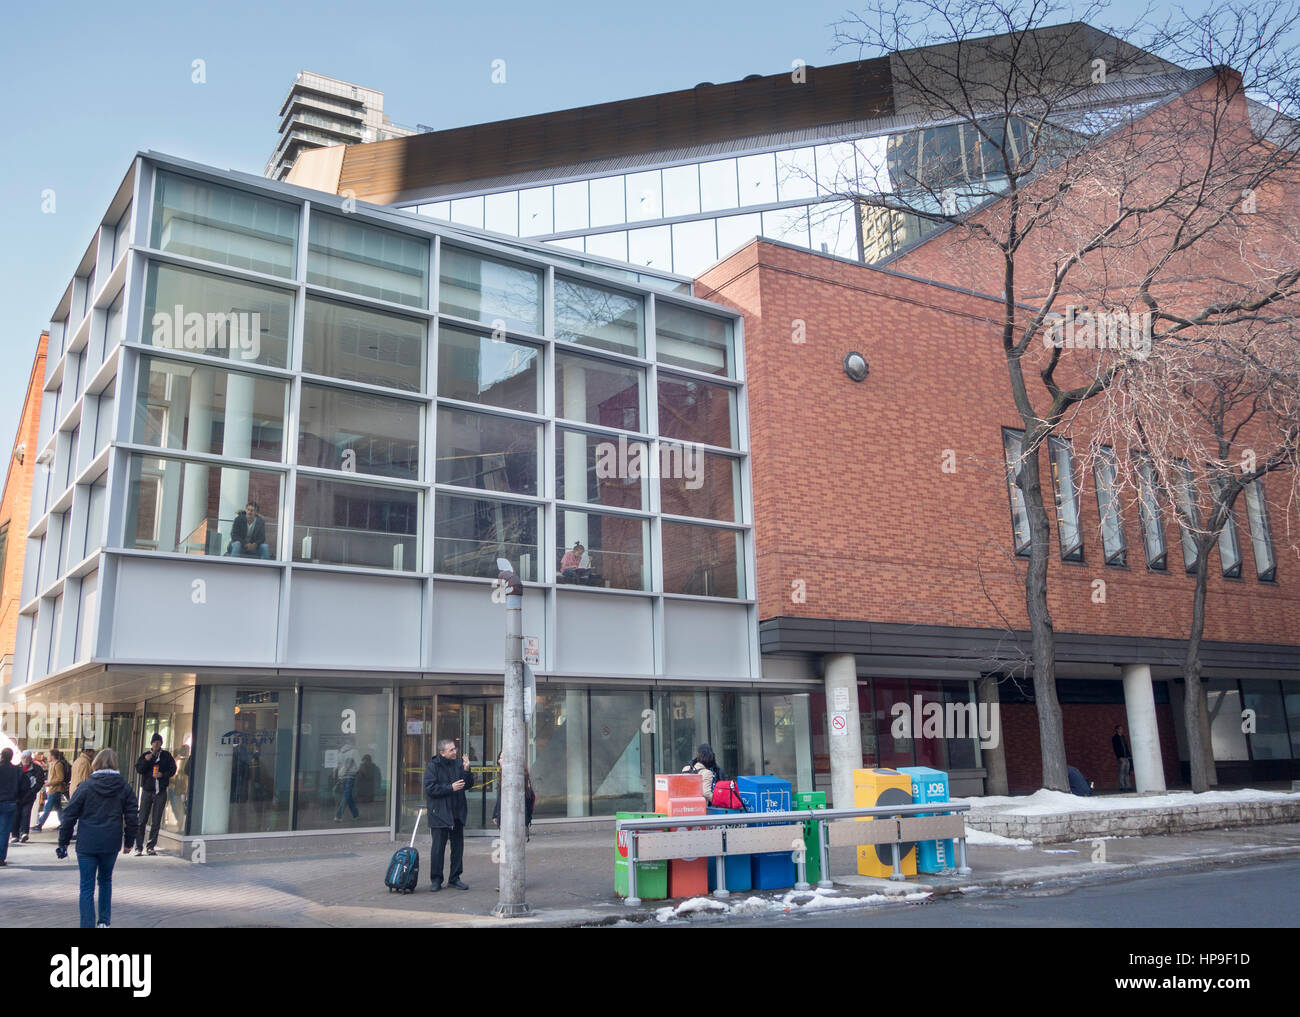 Toronto Referencle Bibliothek auf der Yonge Street in Toronto, Ontario Kanada Stockfoto